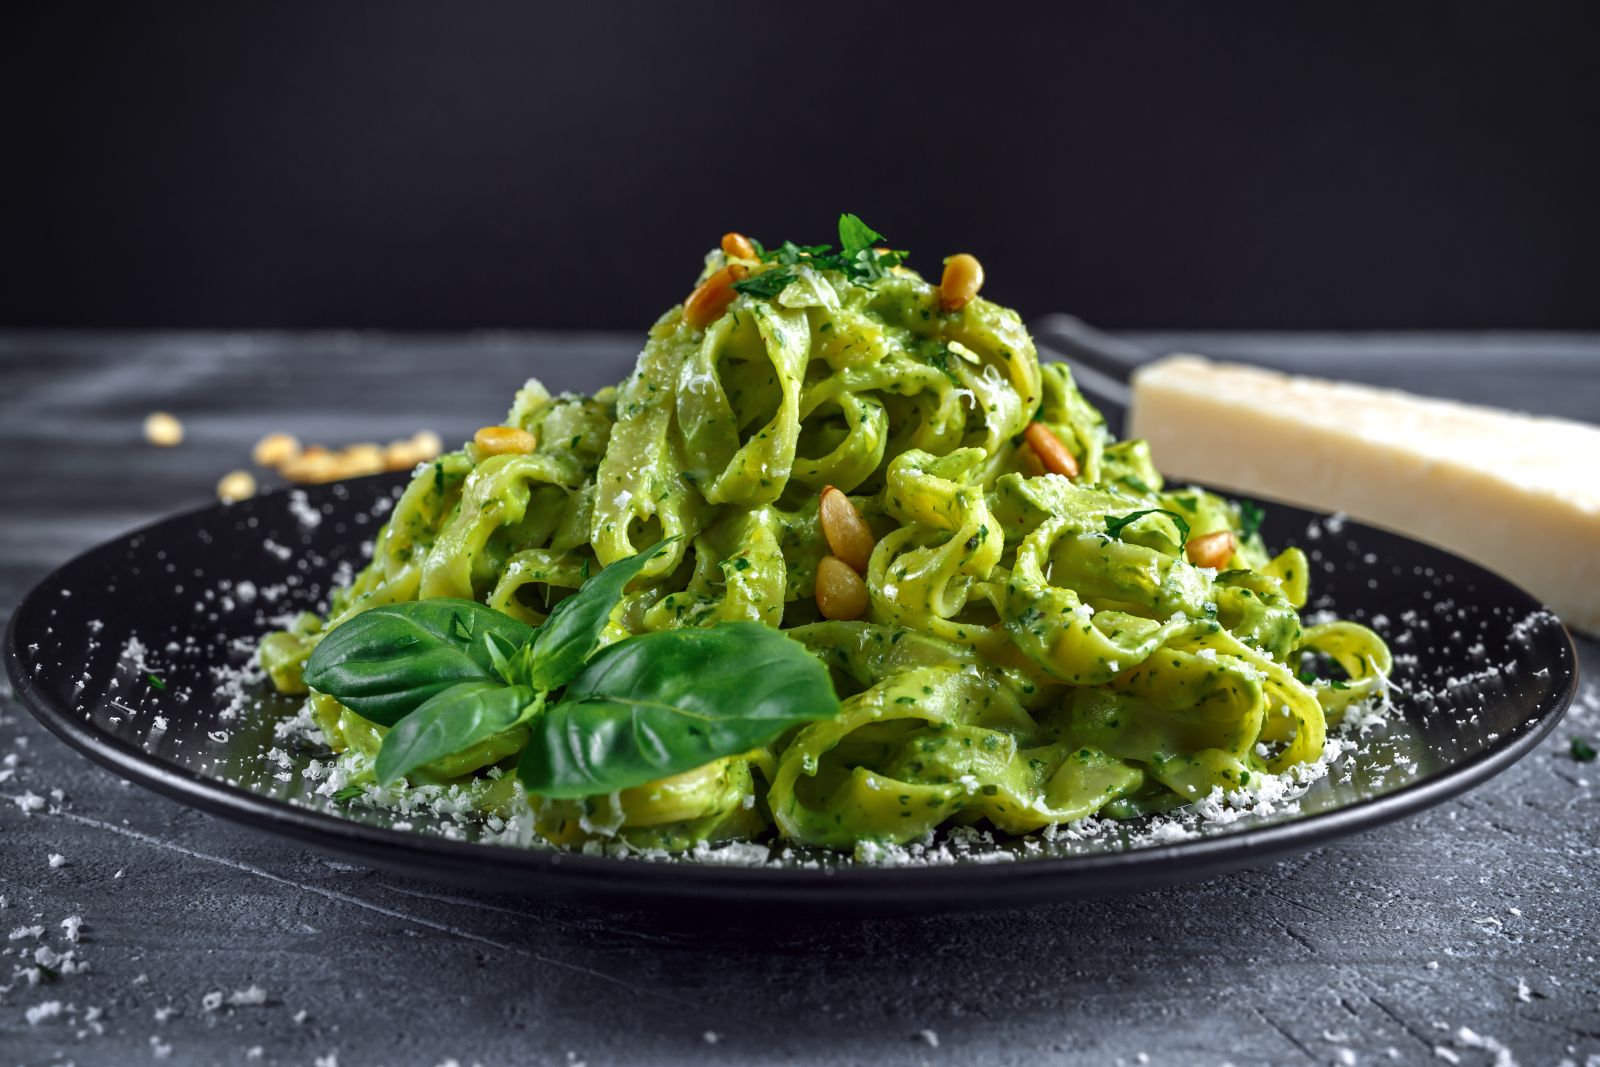 Mastering Tagliatelle al Pesto: A Unique BYOB Italian Cooking Class Experience